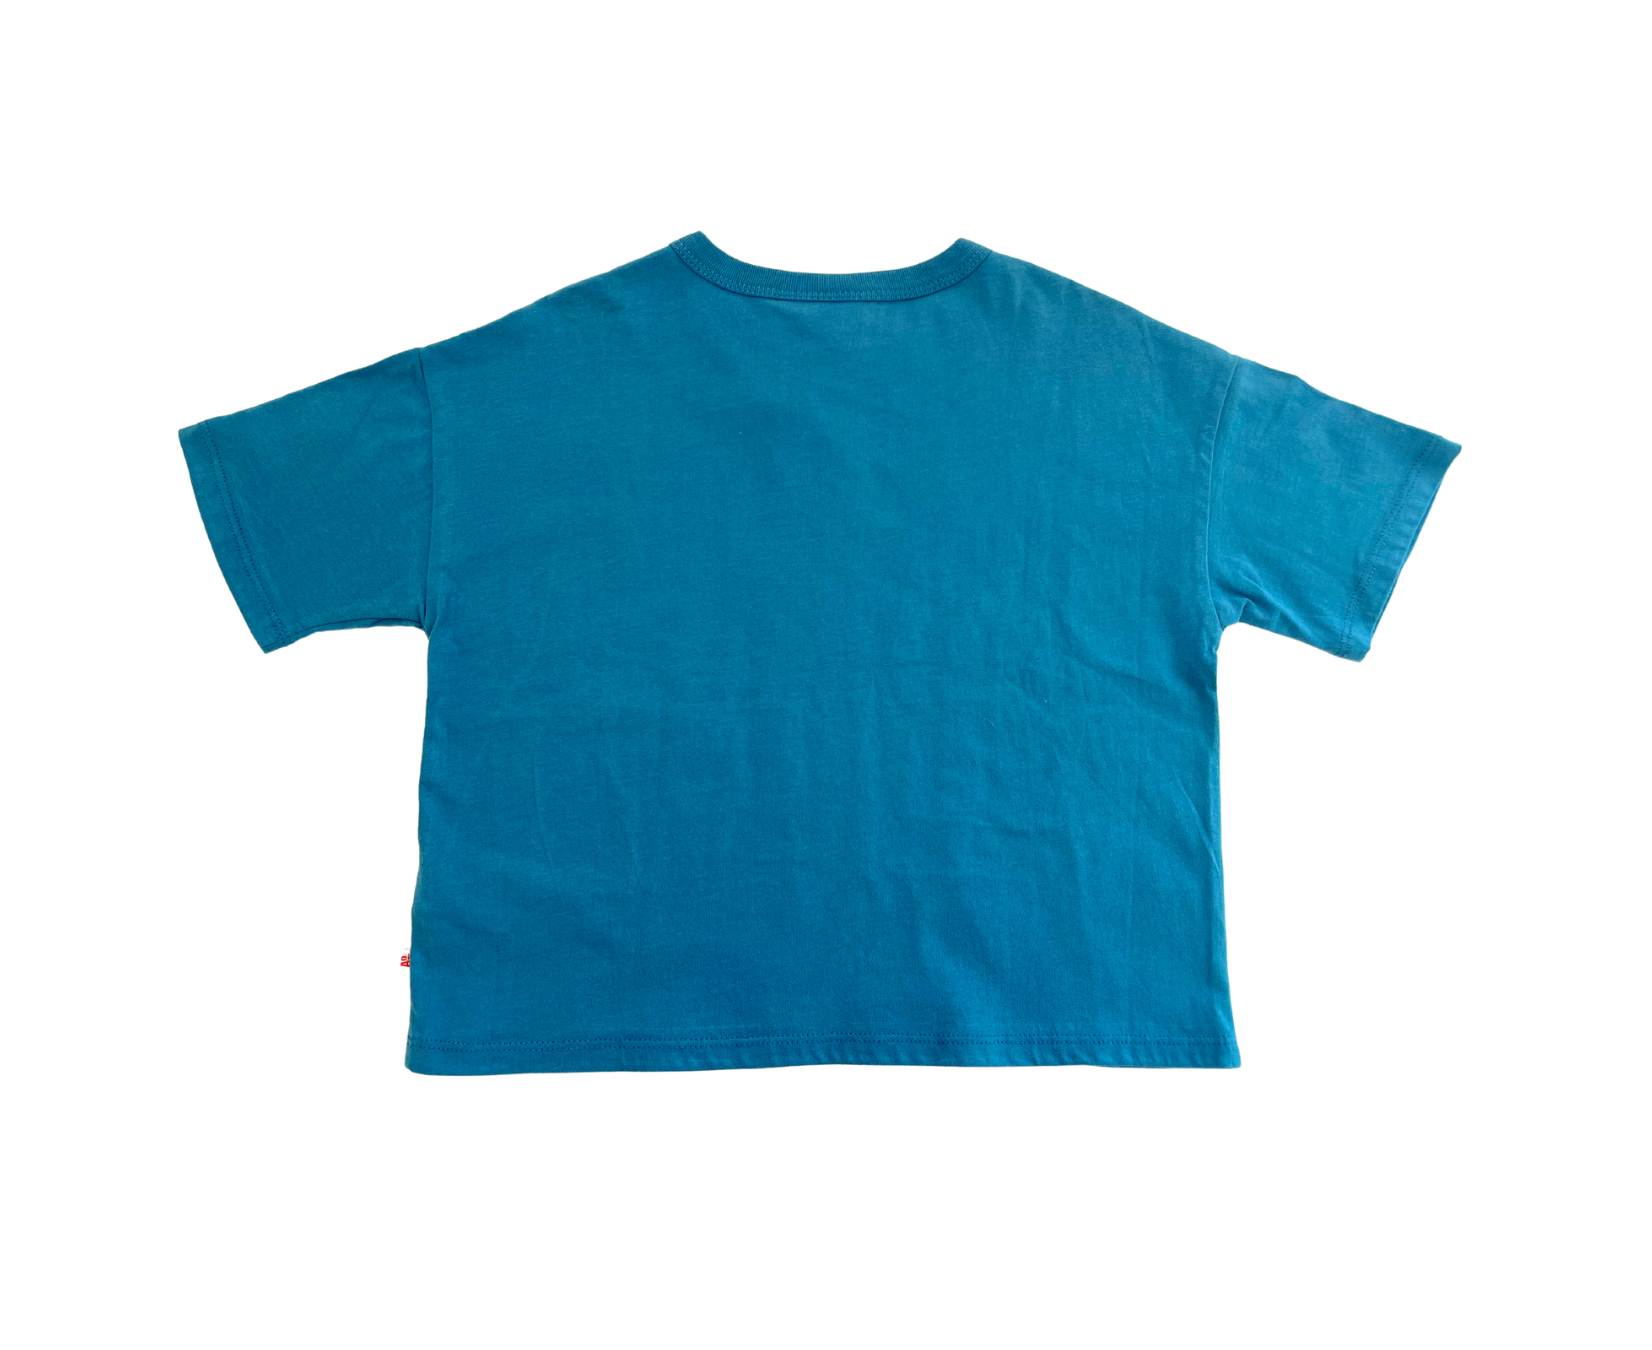 AO76 - T-shirt bleu "respect" - 6 ans